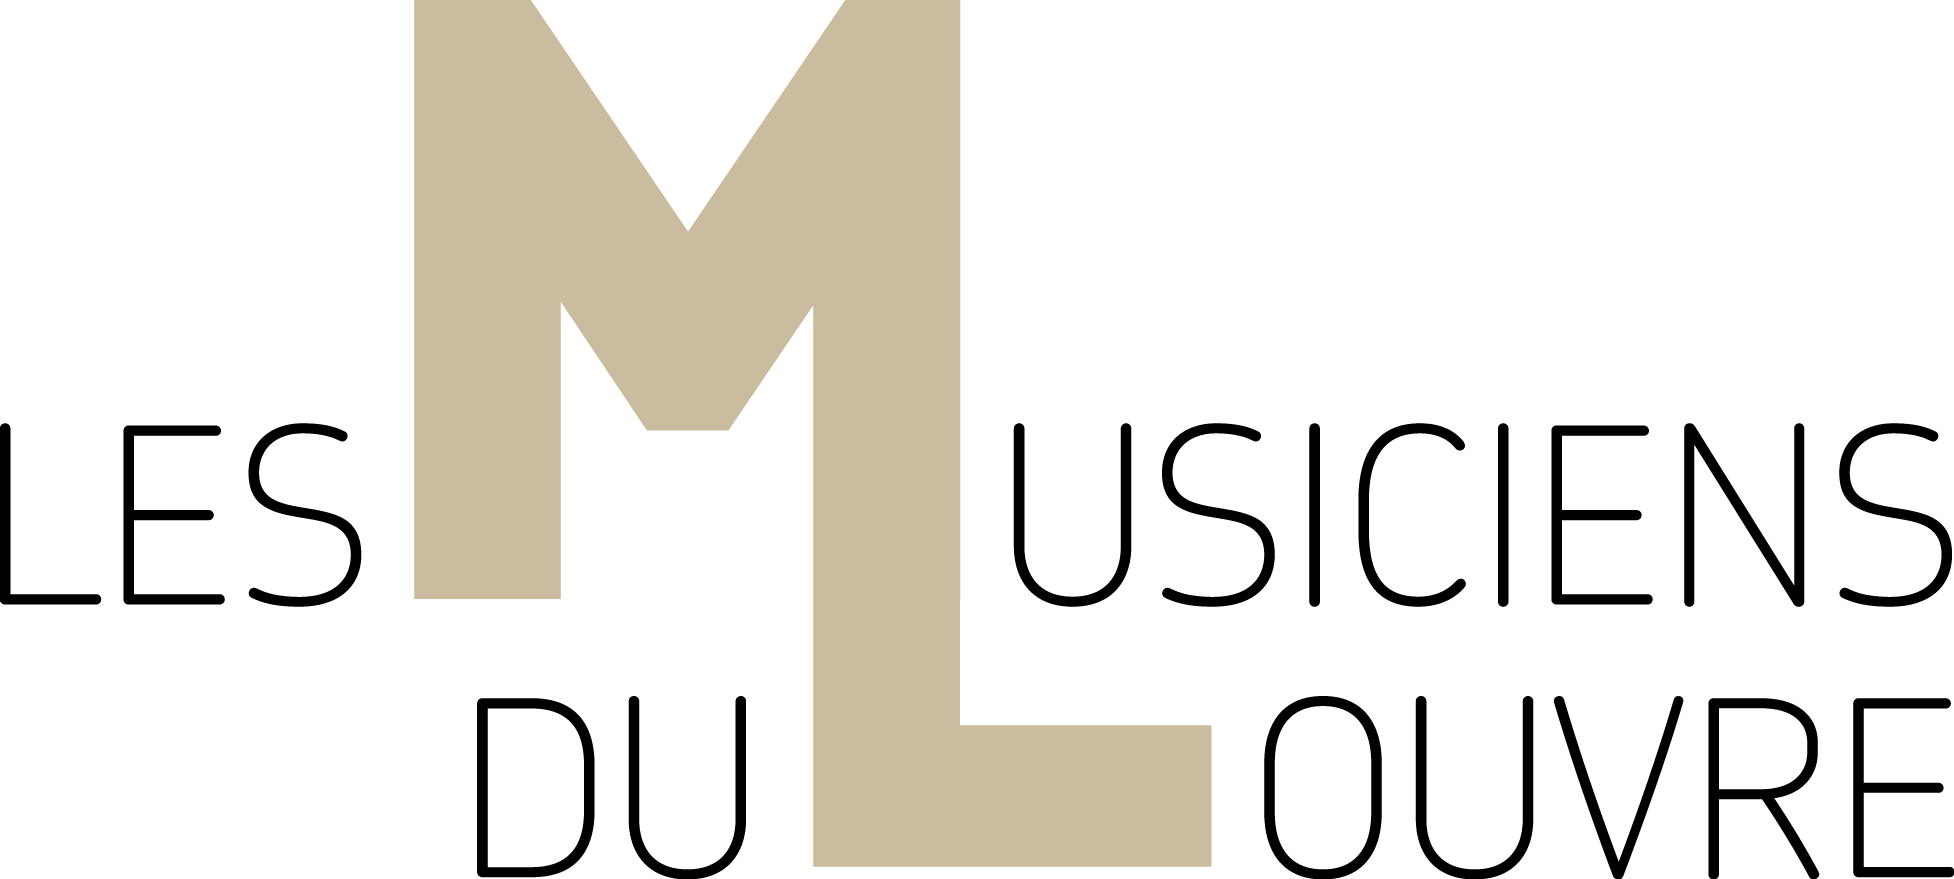 Les Musiciens du Louvre